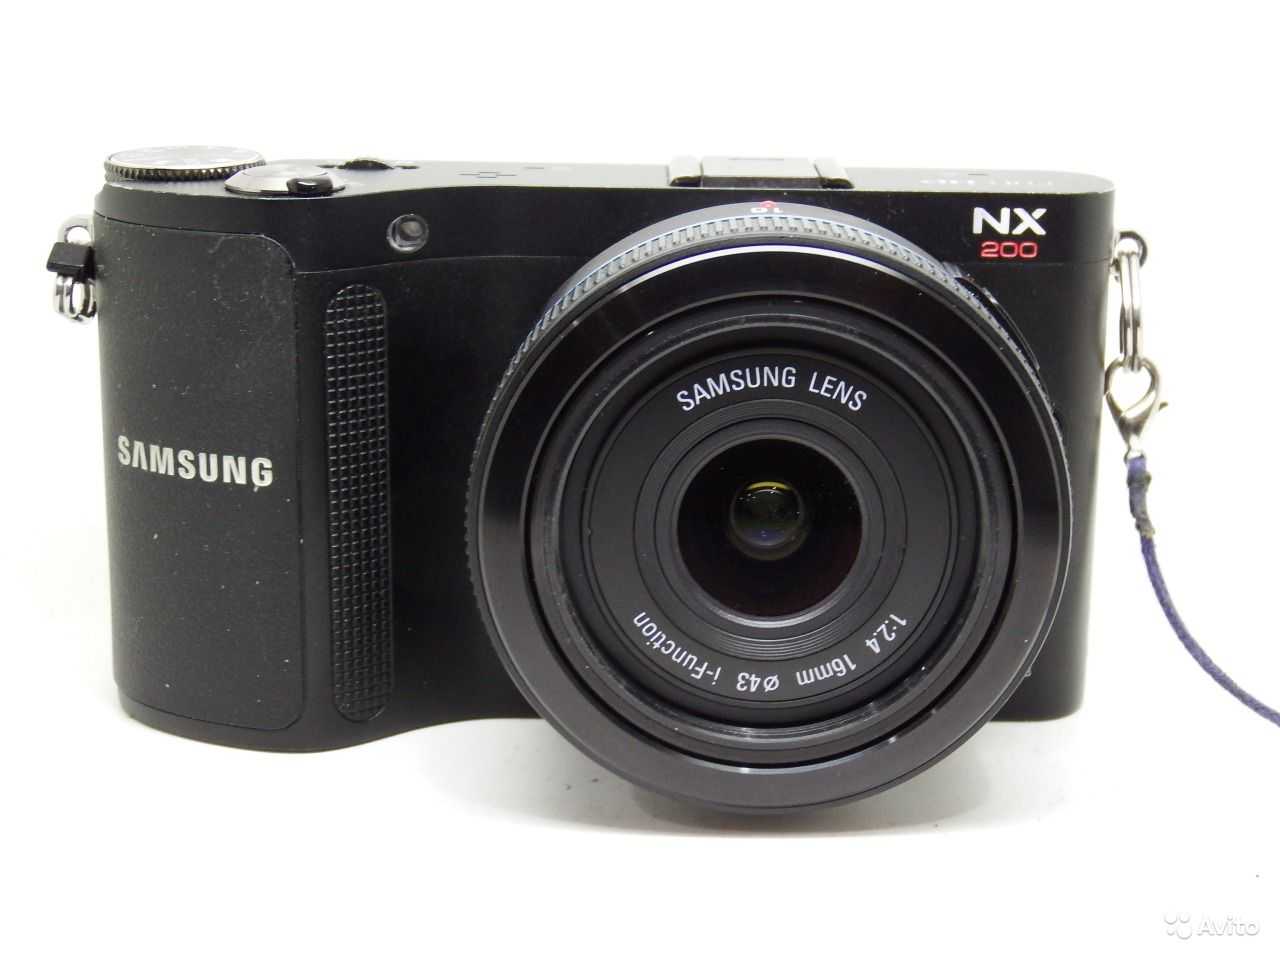 Samsung nx210 kit - купить , скидки, цена, отзывы, обзор, характеристики - фотоаппараты цифровые